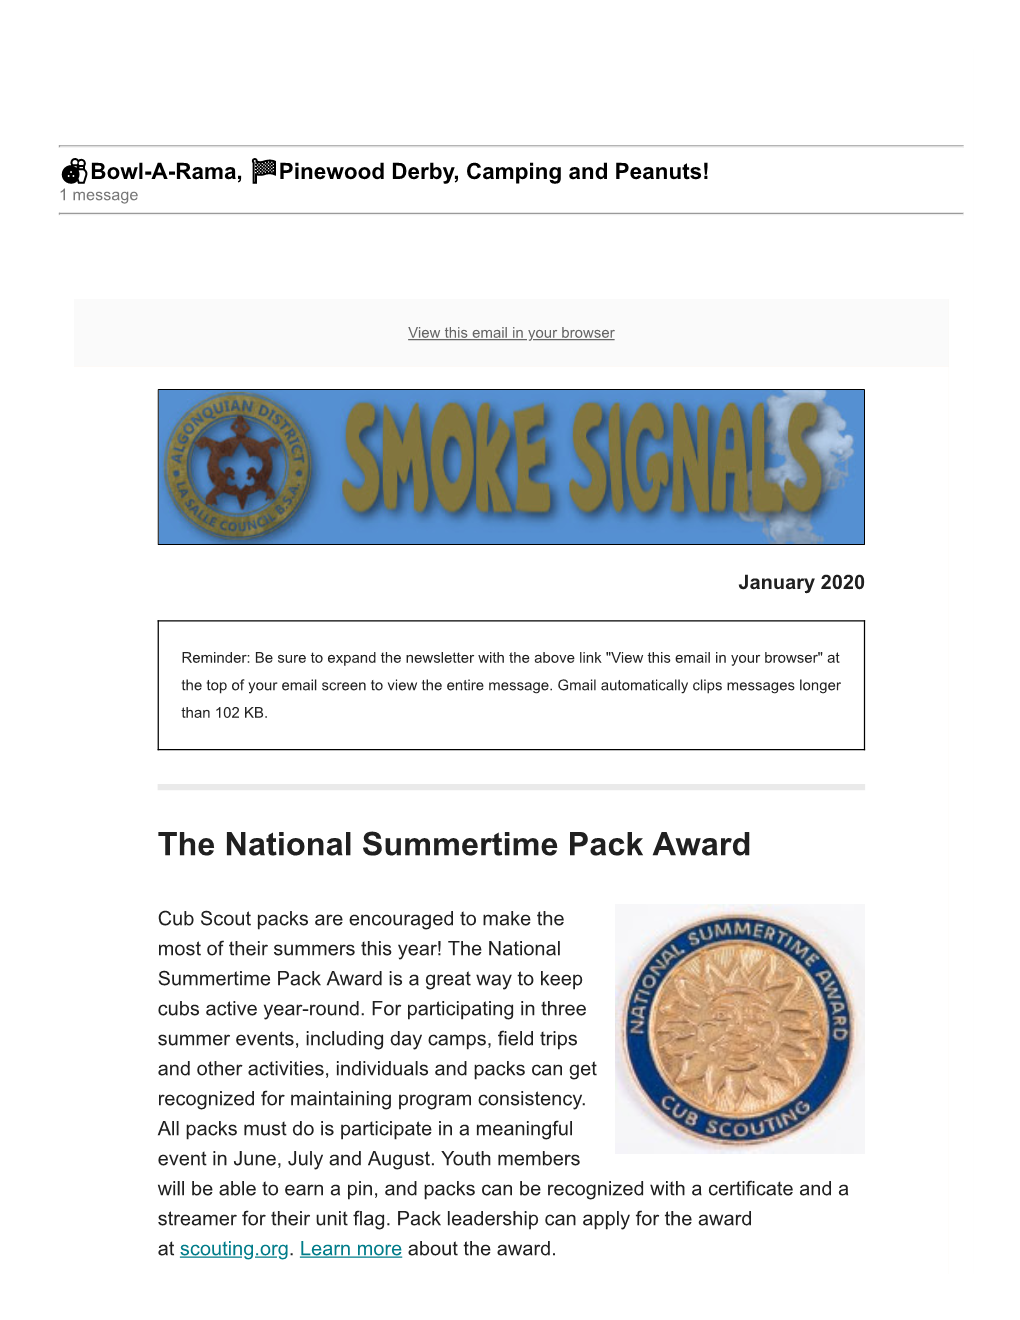 The National Summertime Pack Award